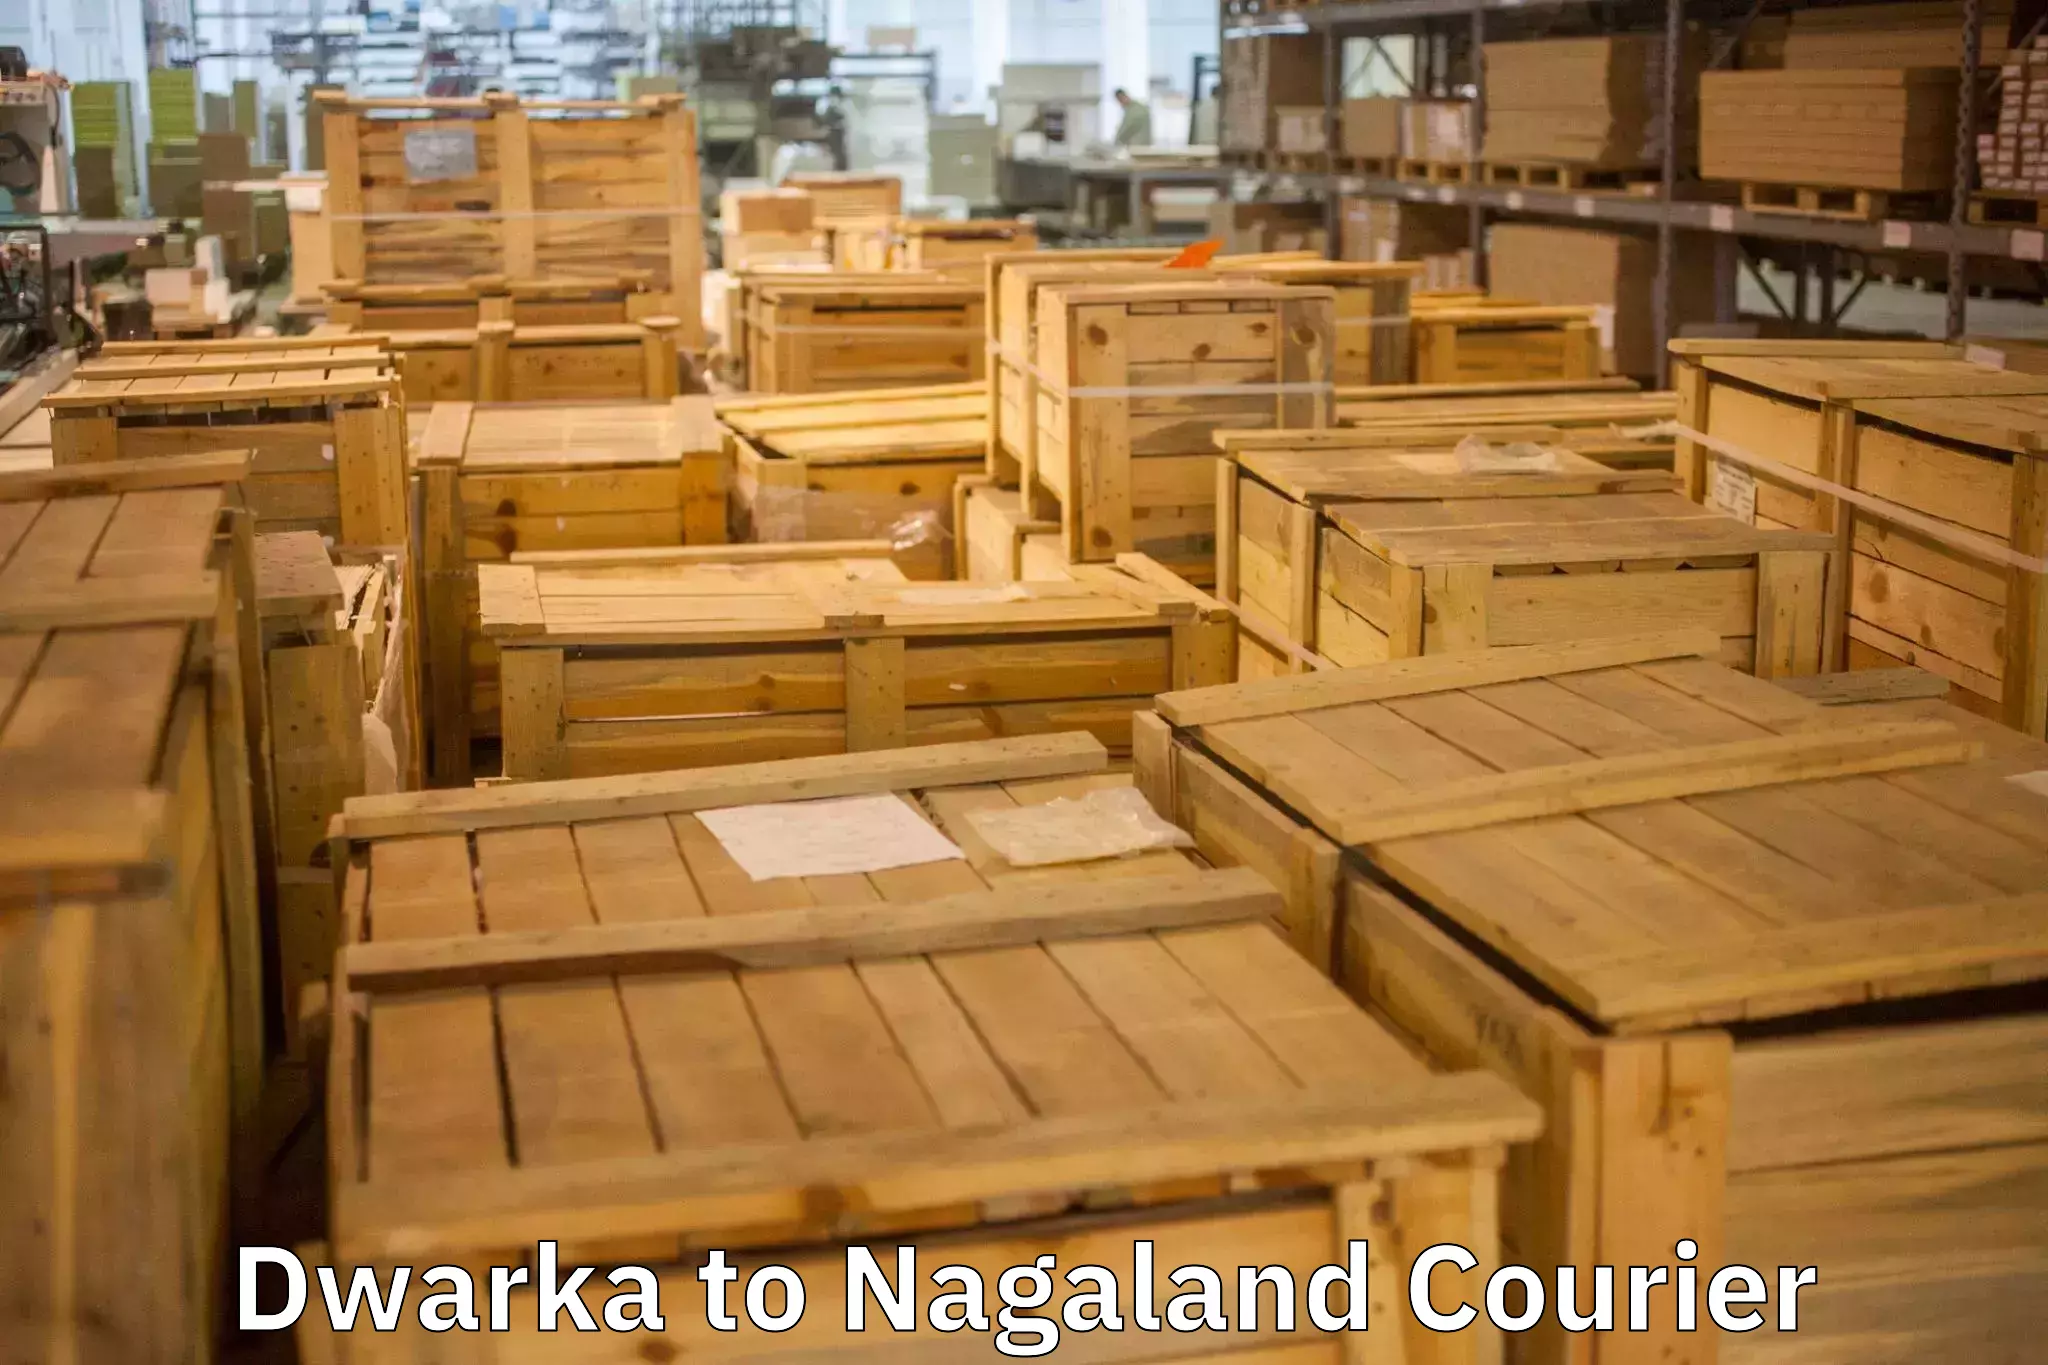 Furniture transport experts Dwarka to Phek